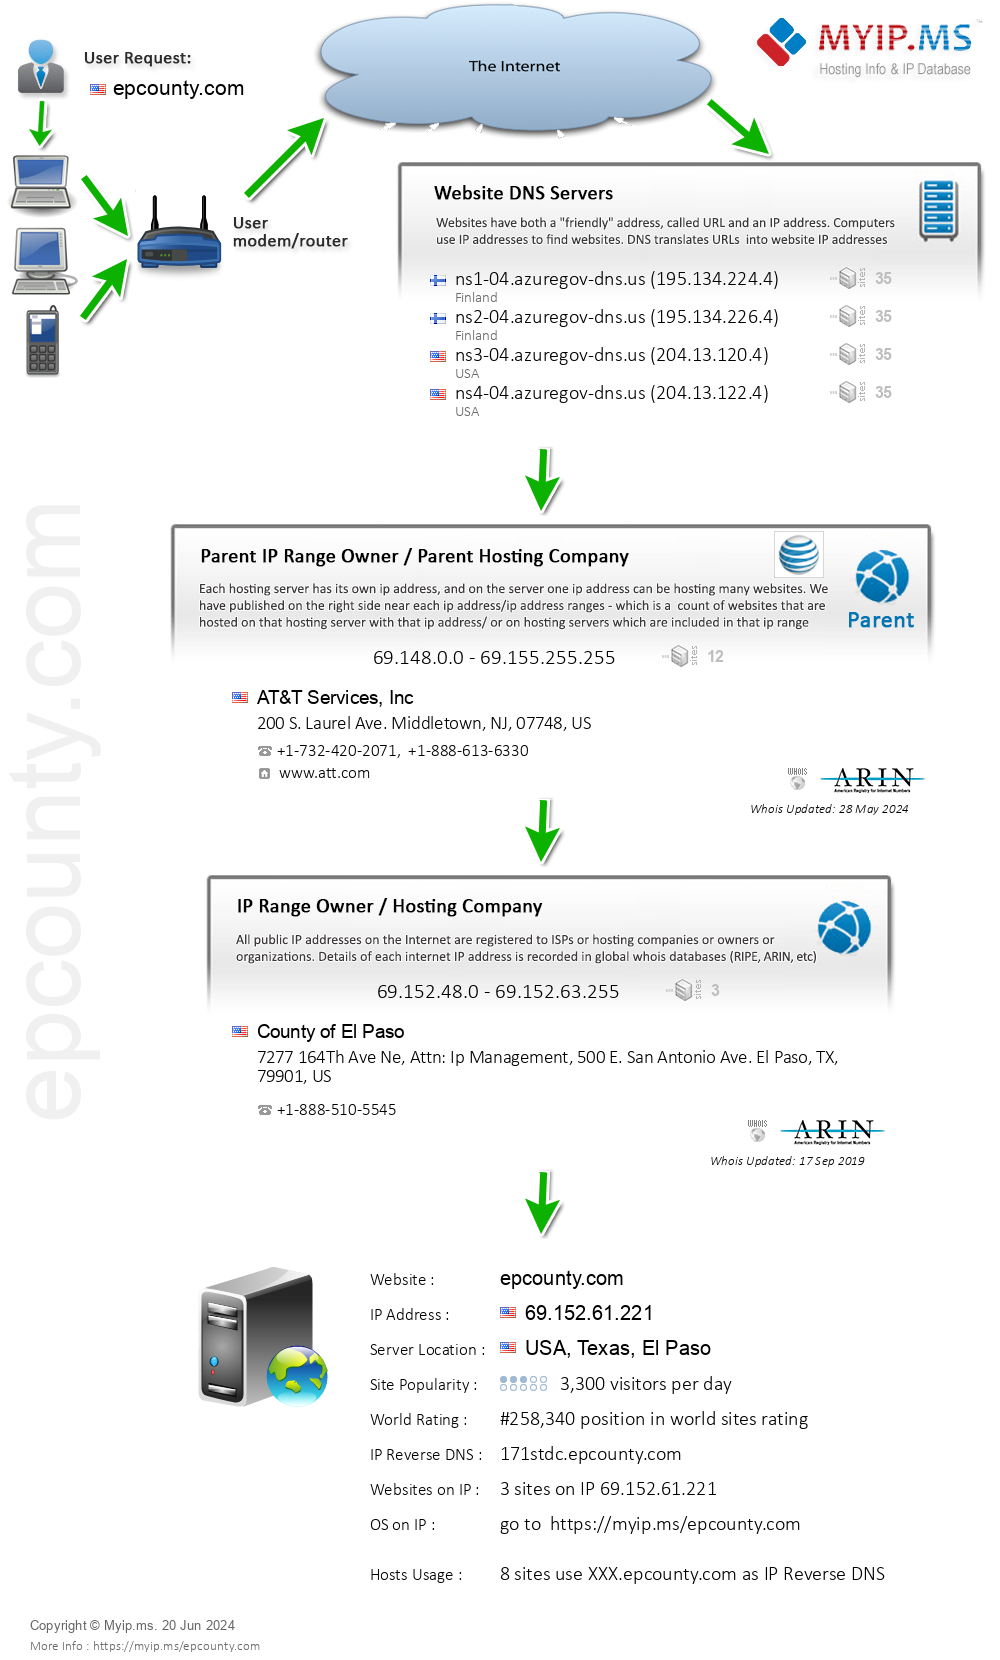 Epcounty.com - Website Hosting Visual IP Diagram